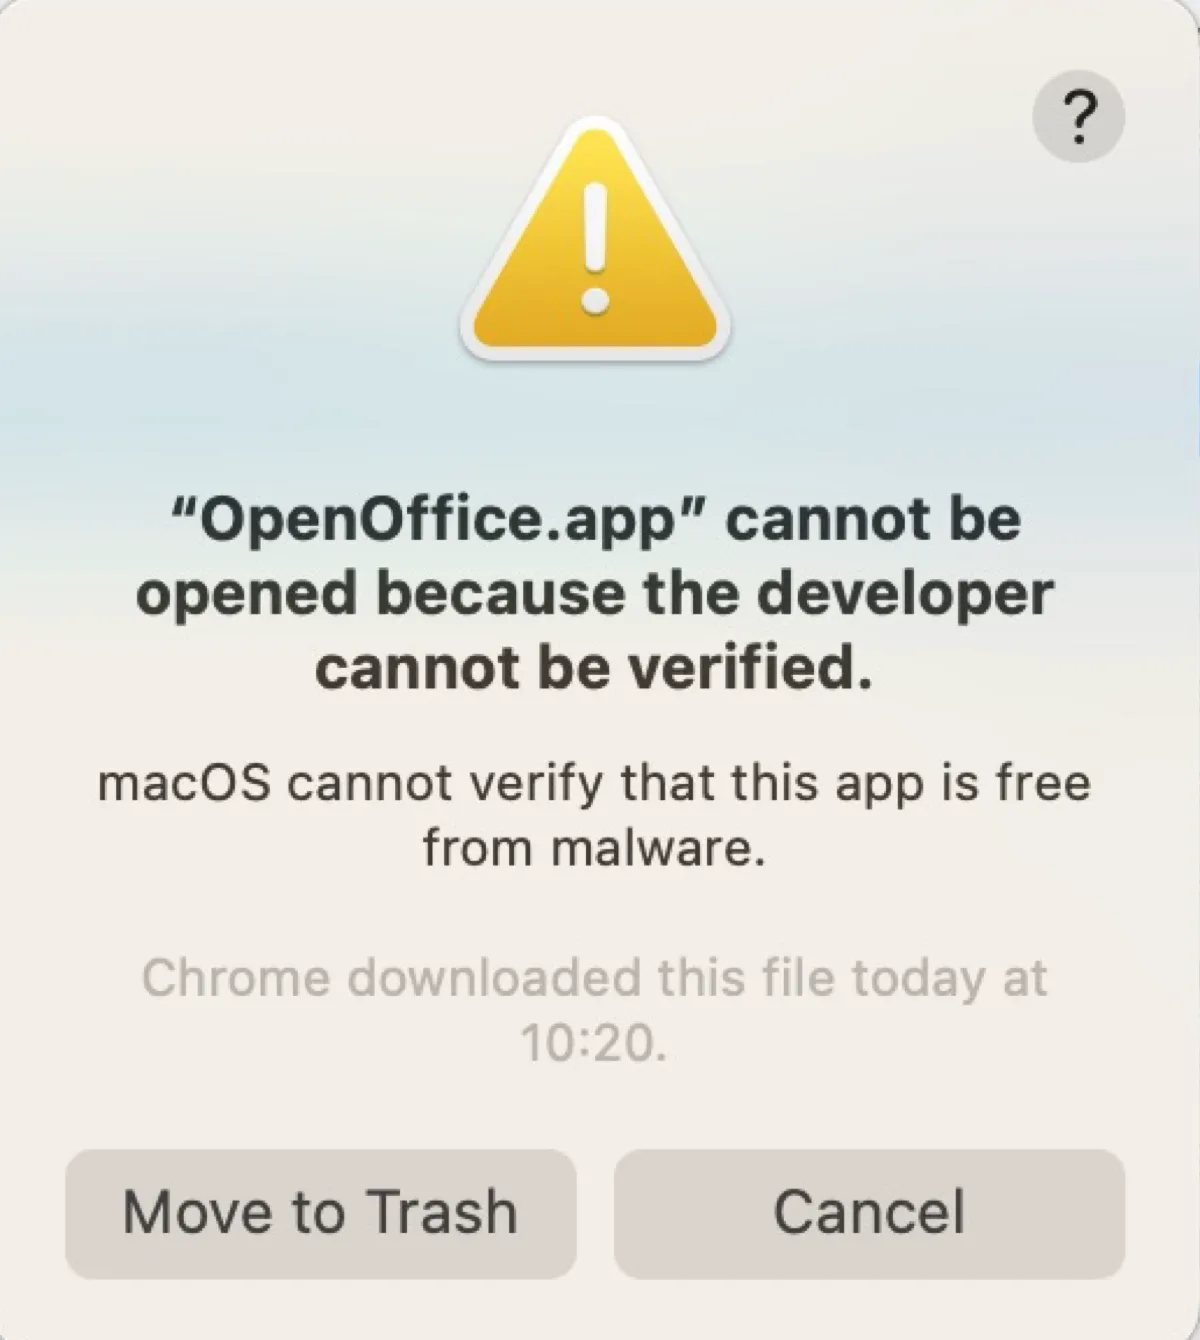 El error que dice que la aplicación no se puede abrir porque el desarrollador no puede ser verificado